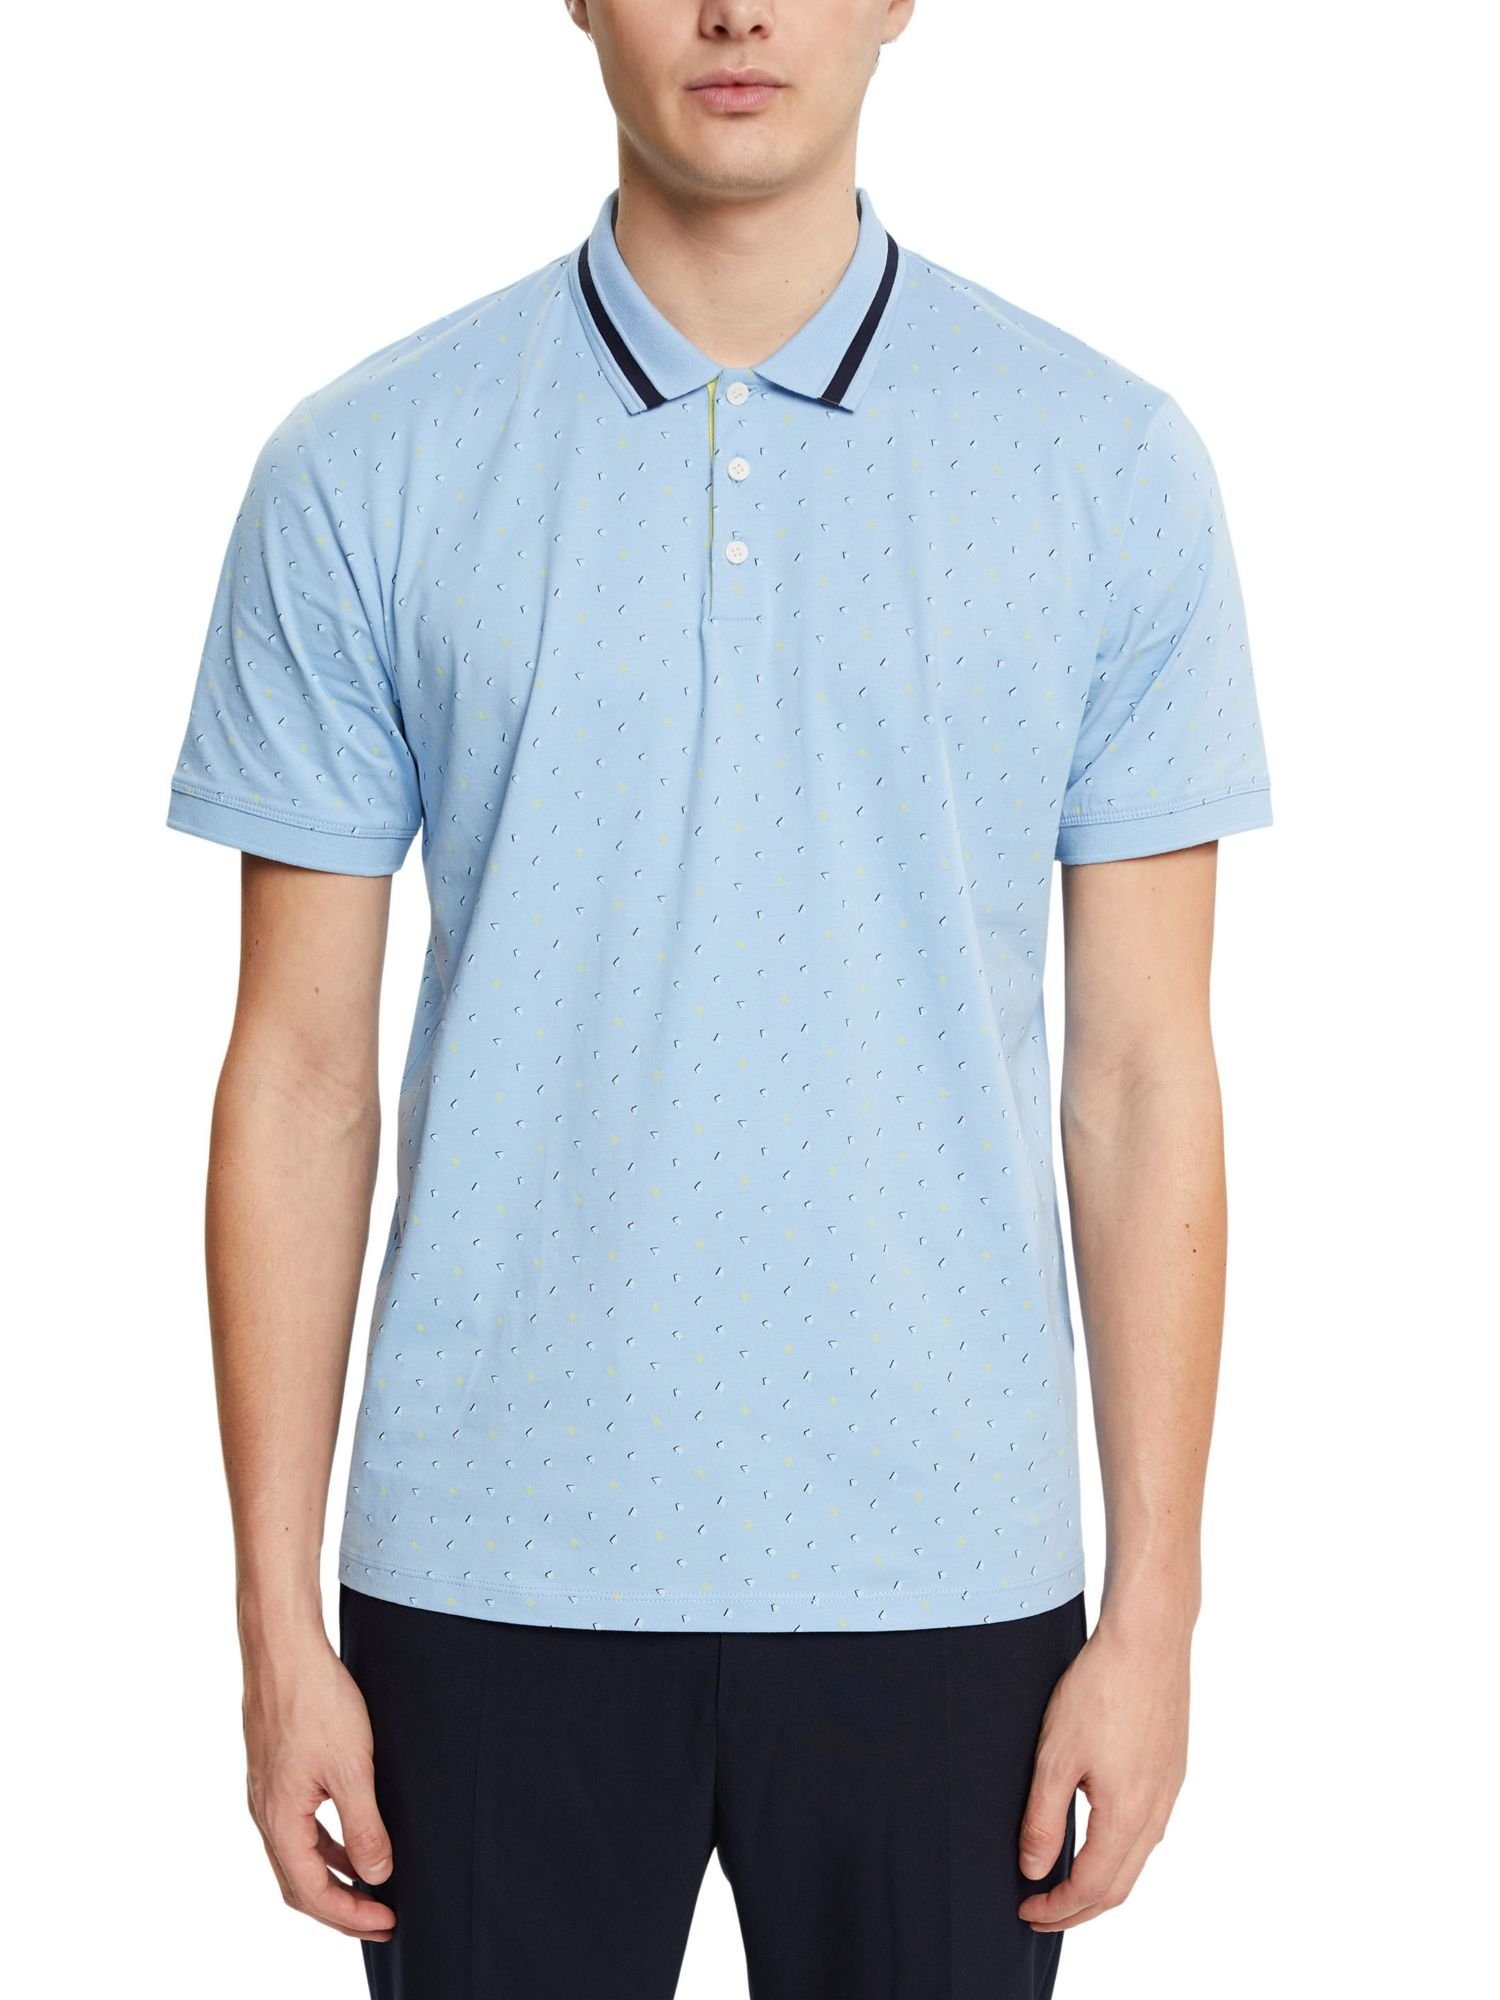 Esprit Poloshirt Poloshirt mit Allover-Muster LIGHT BLUE AQUA